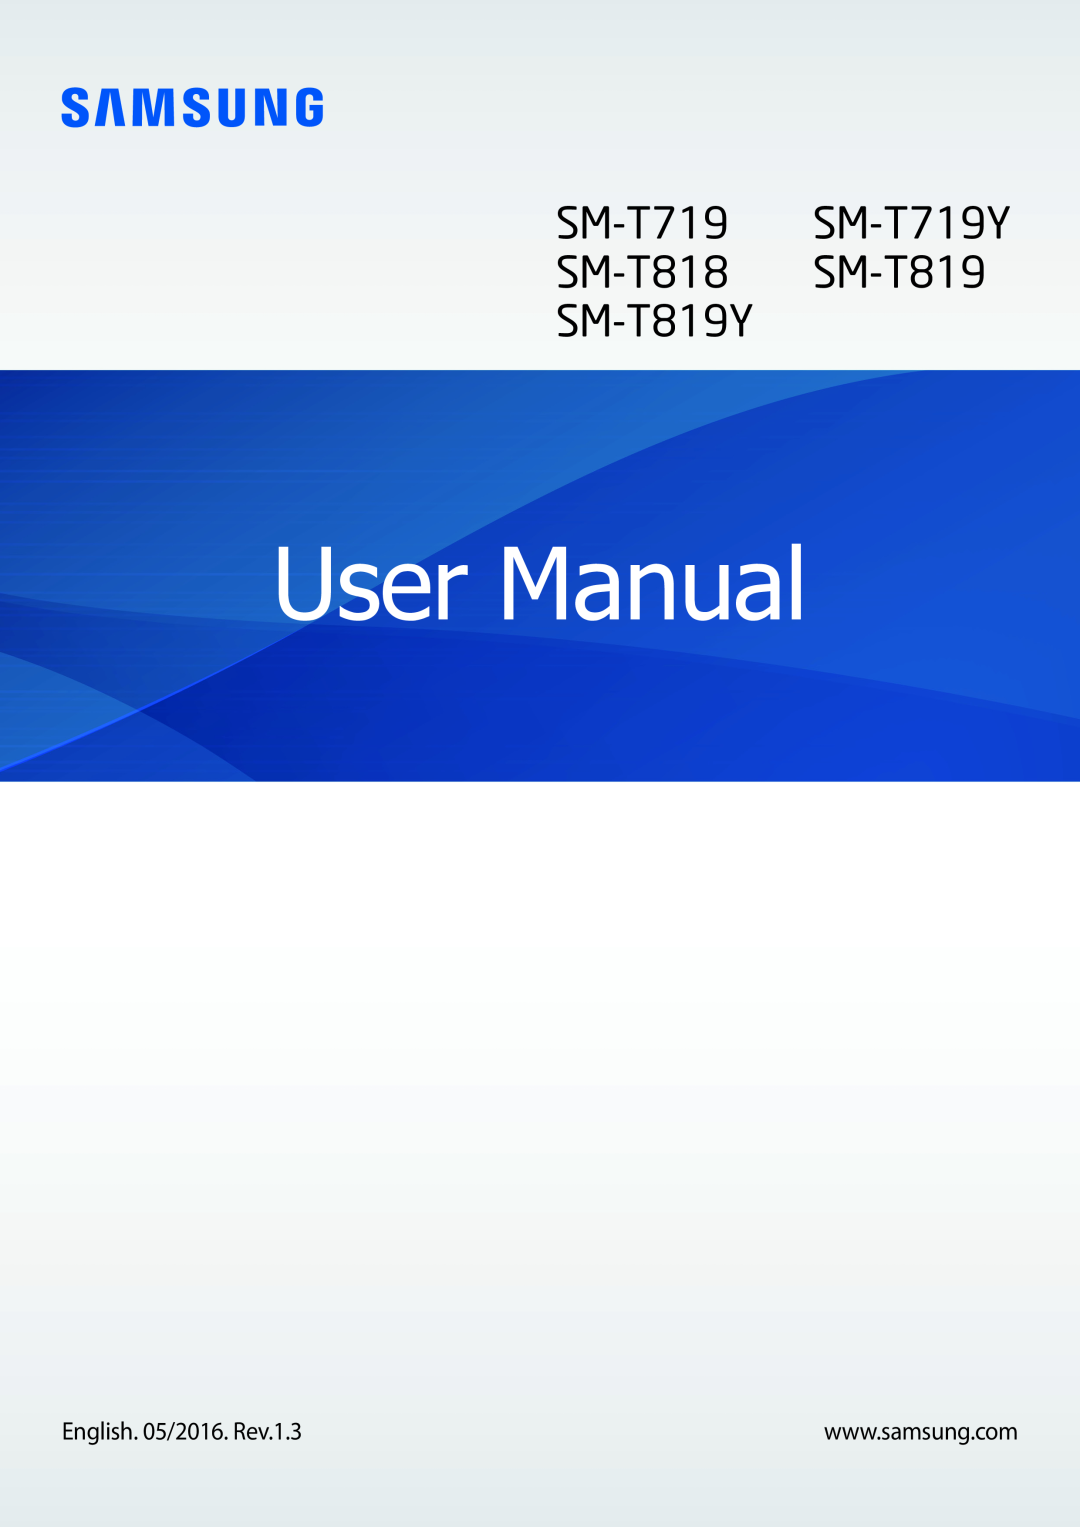 Samsung SM-T719NZKEDBT, SM-T819NZKEDBT, SM-T719NZWEDBT manual User Manual, SM-T719 SM-T719Y SM-T818 SM-T819 SM-T819Y 